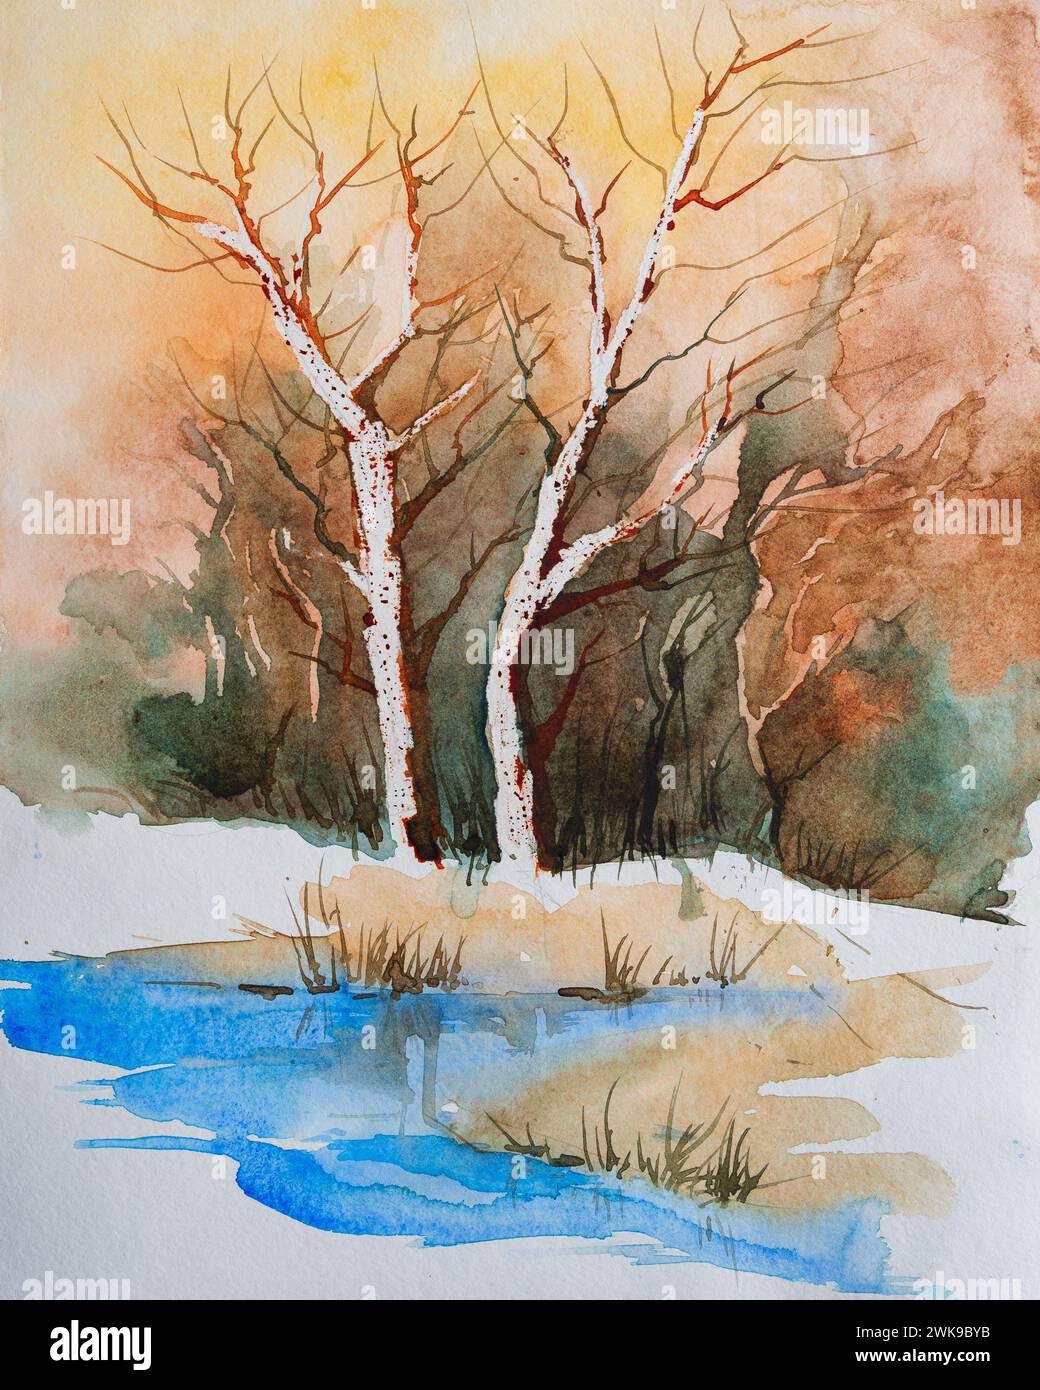 Belle peinture aquarelle d'arbres sans feuilles mourants dans les arbres d'hiver à la pente de la rivière. Illustration aquarelle peinte à la main. Peinture indienne à la main Banque D'Images